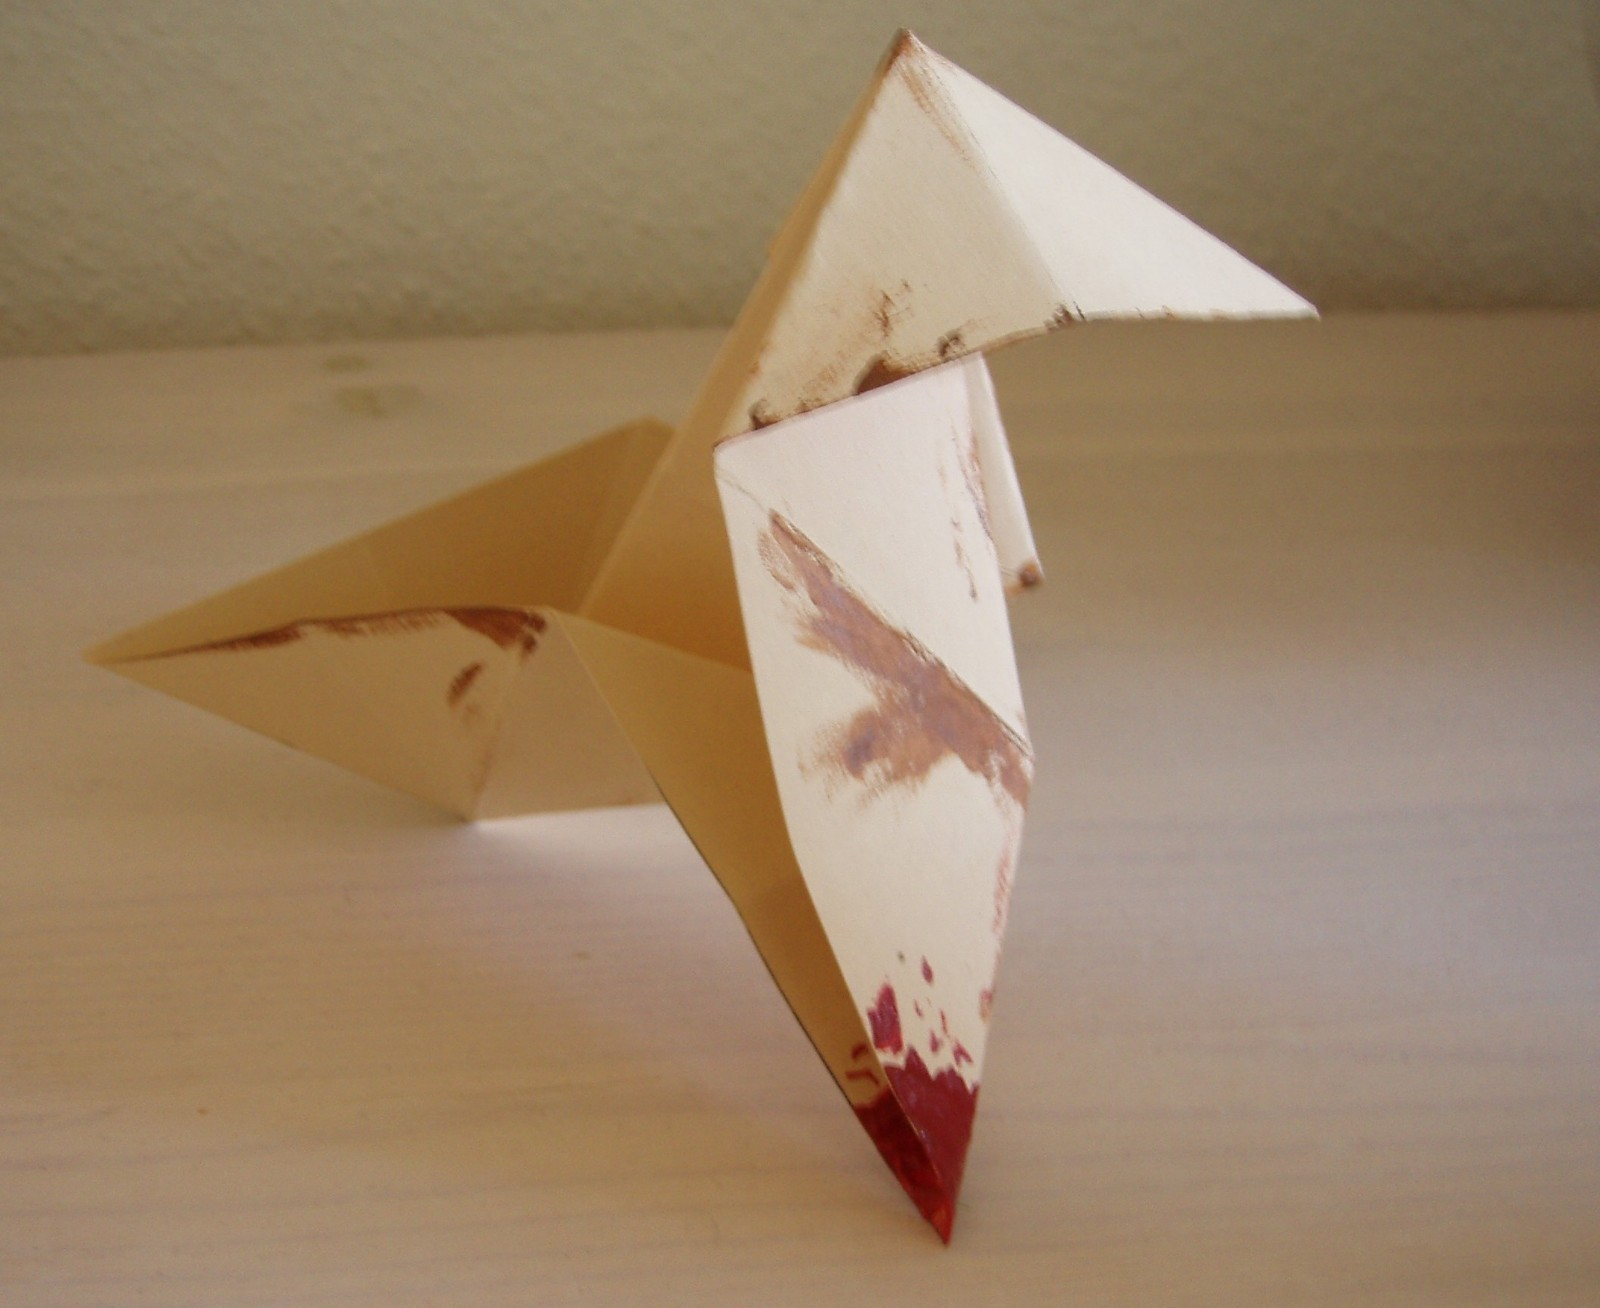 Ps3 Origami Killer The Bird From Ps3s Havy Rain Origami Killer An Origami Bird